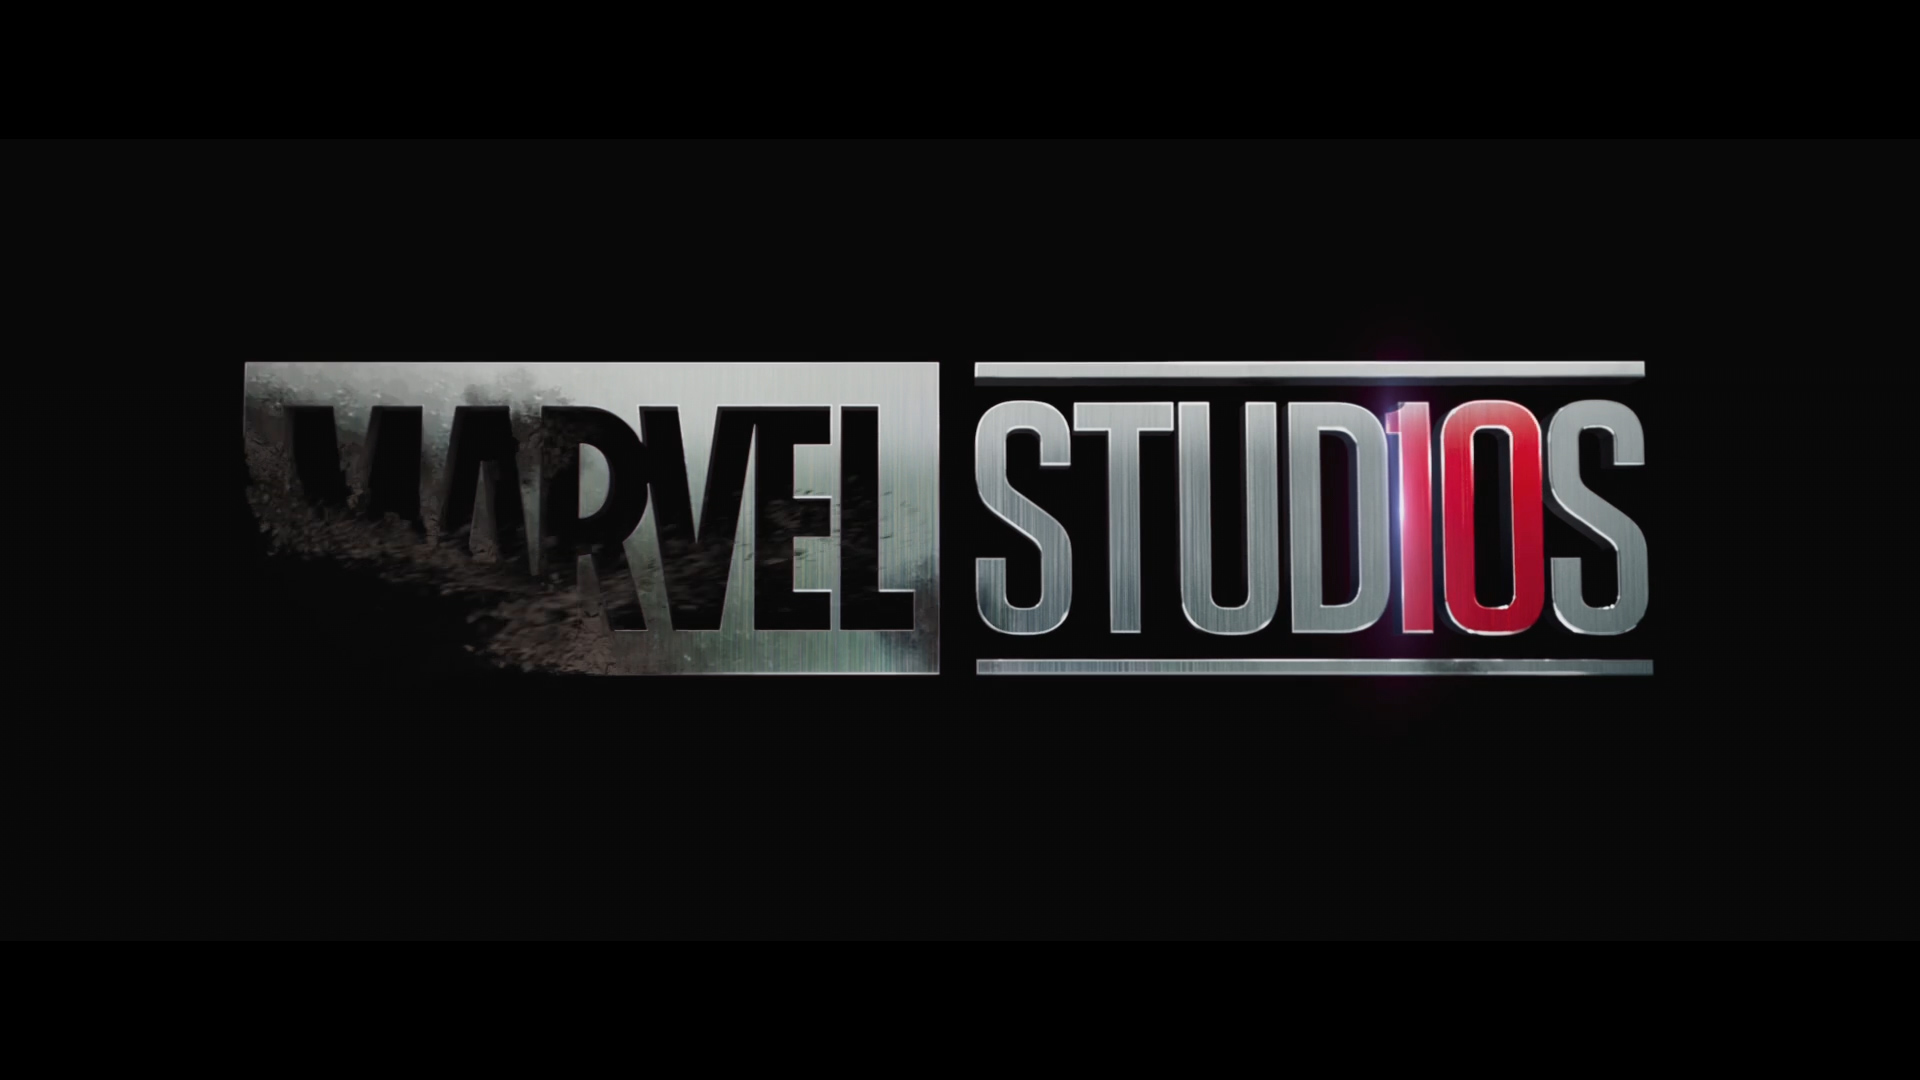 AVENGERS: ENDGAME screencap (Marvel Studios)